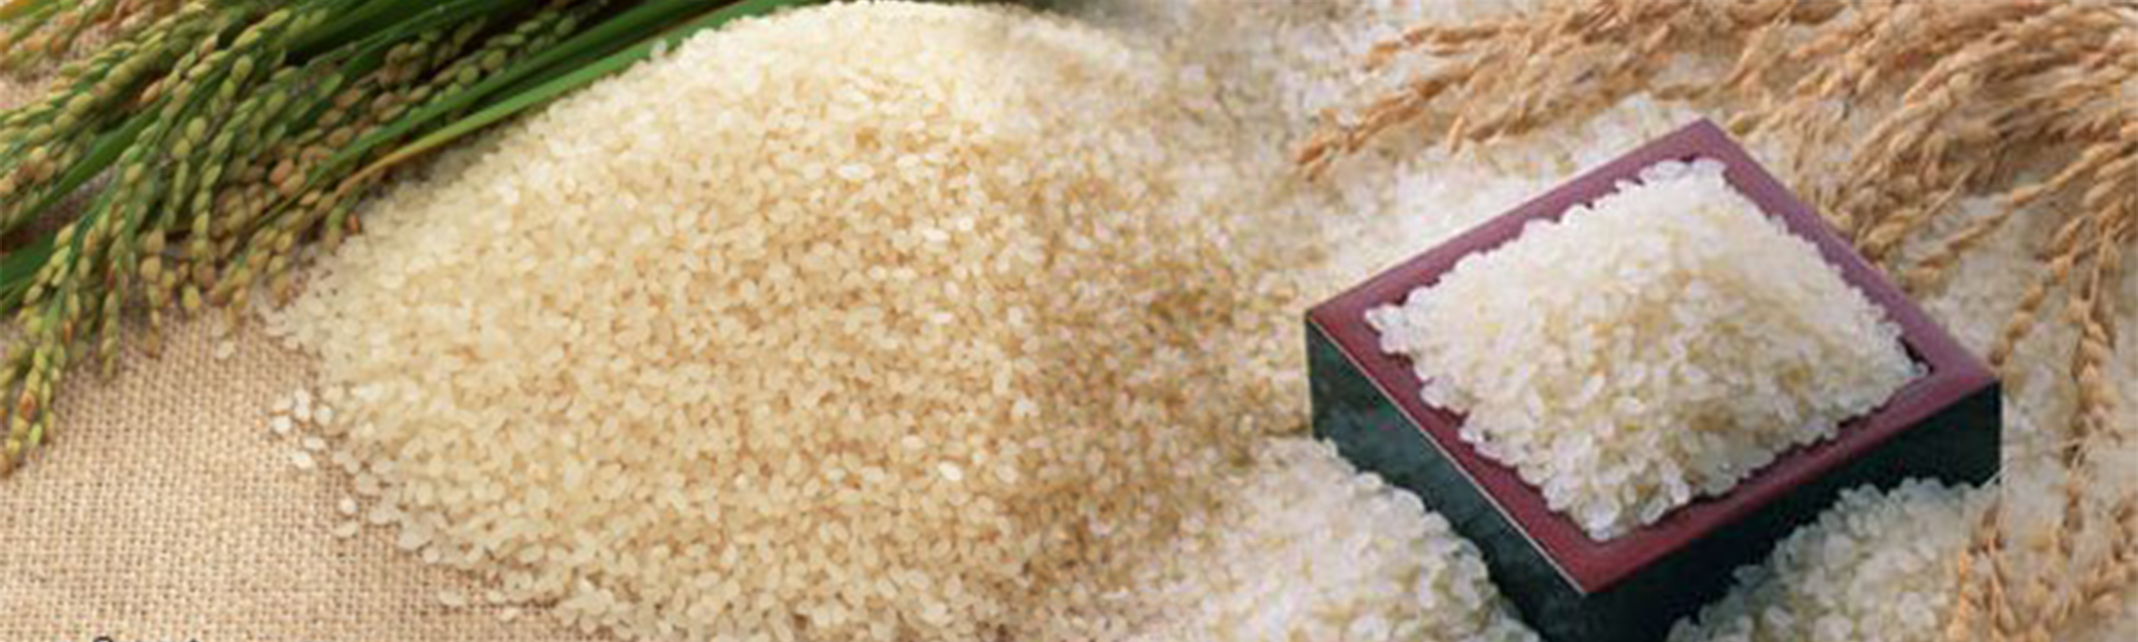 (57)شركة تتنافس على توريد 103.350 ألف طن أرز أبيض للسلع التموينية